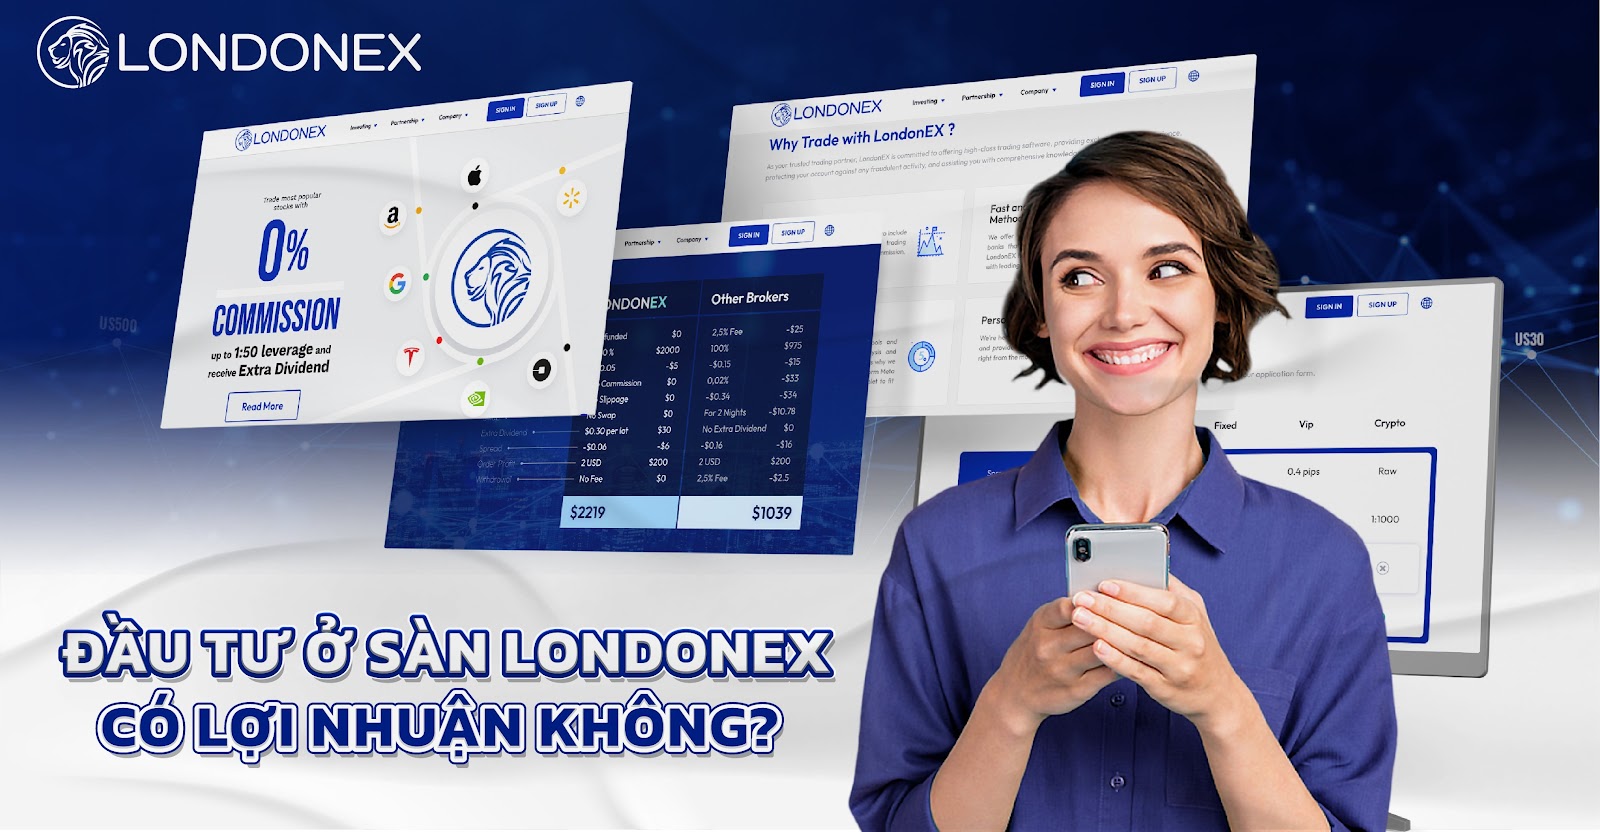 Londonex Mở Ra Cơ Hội Đầu Tư Sinh Lời Ổn Định Cho Người Việt